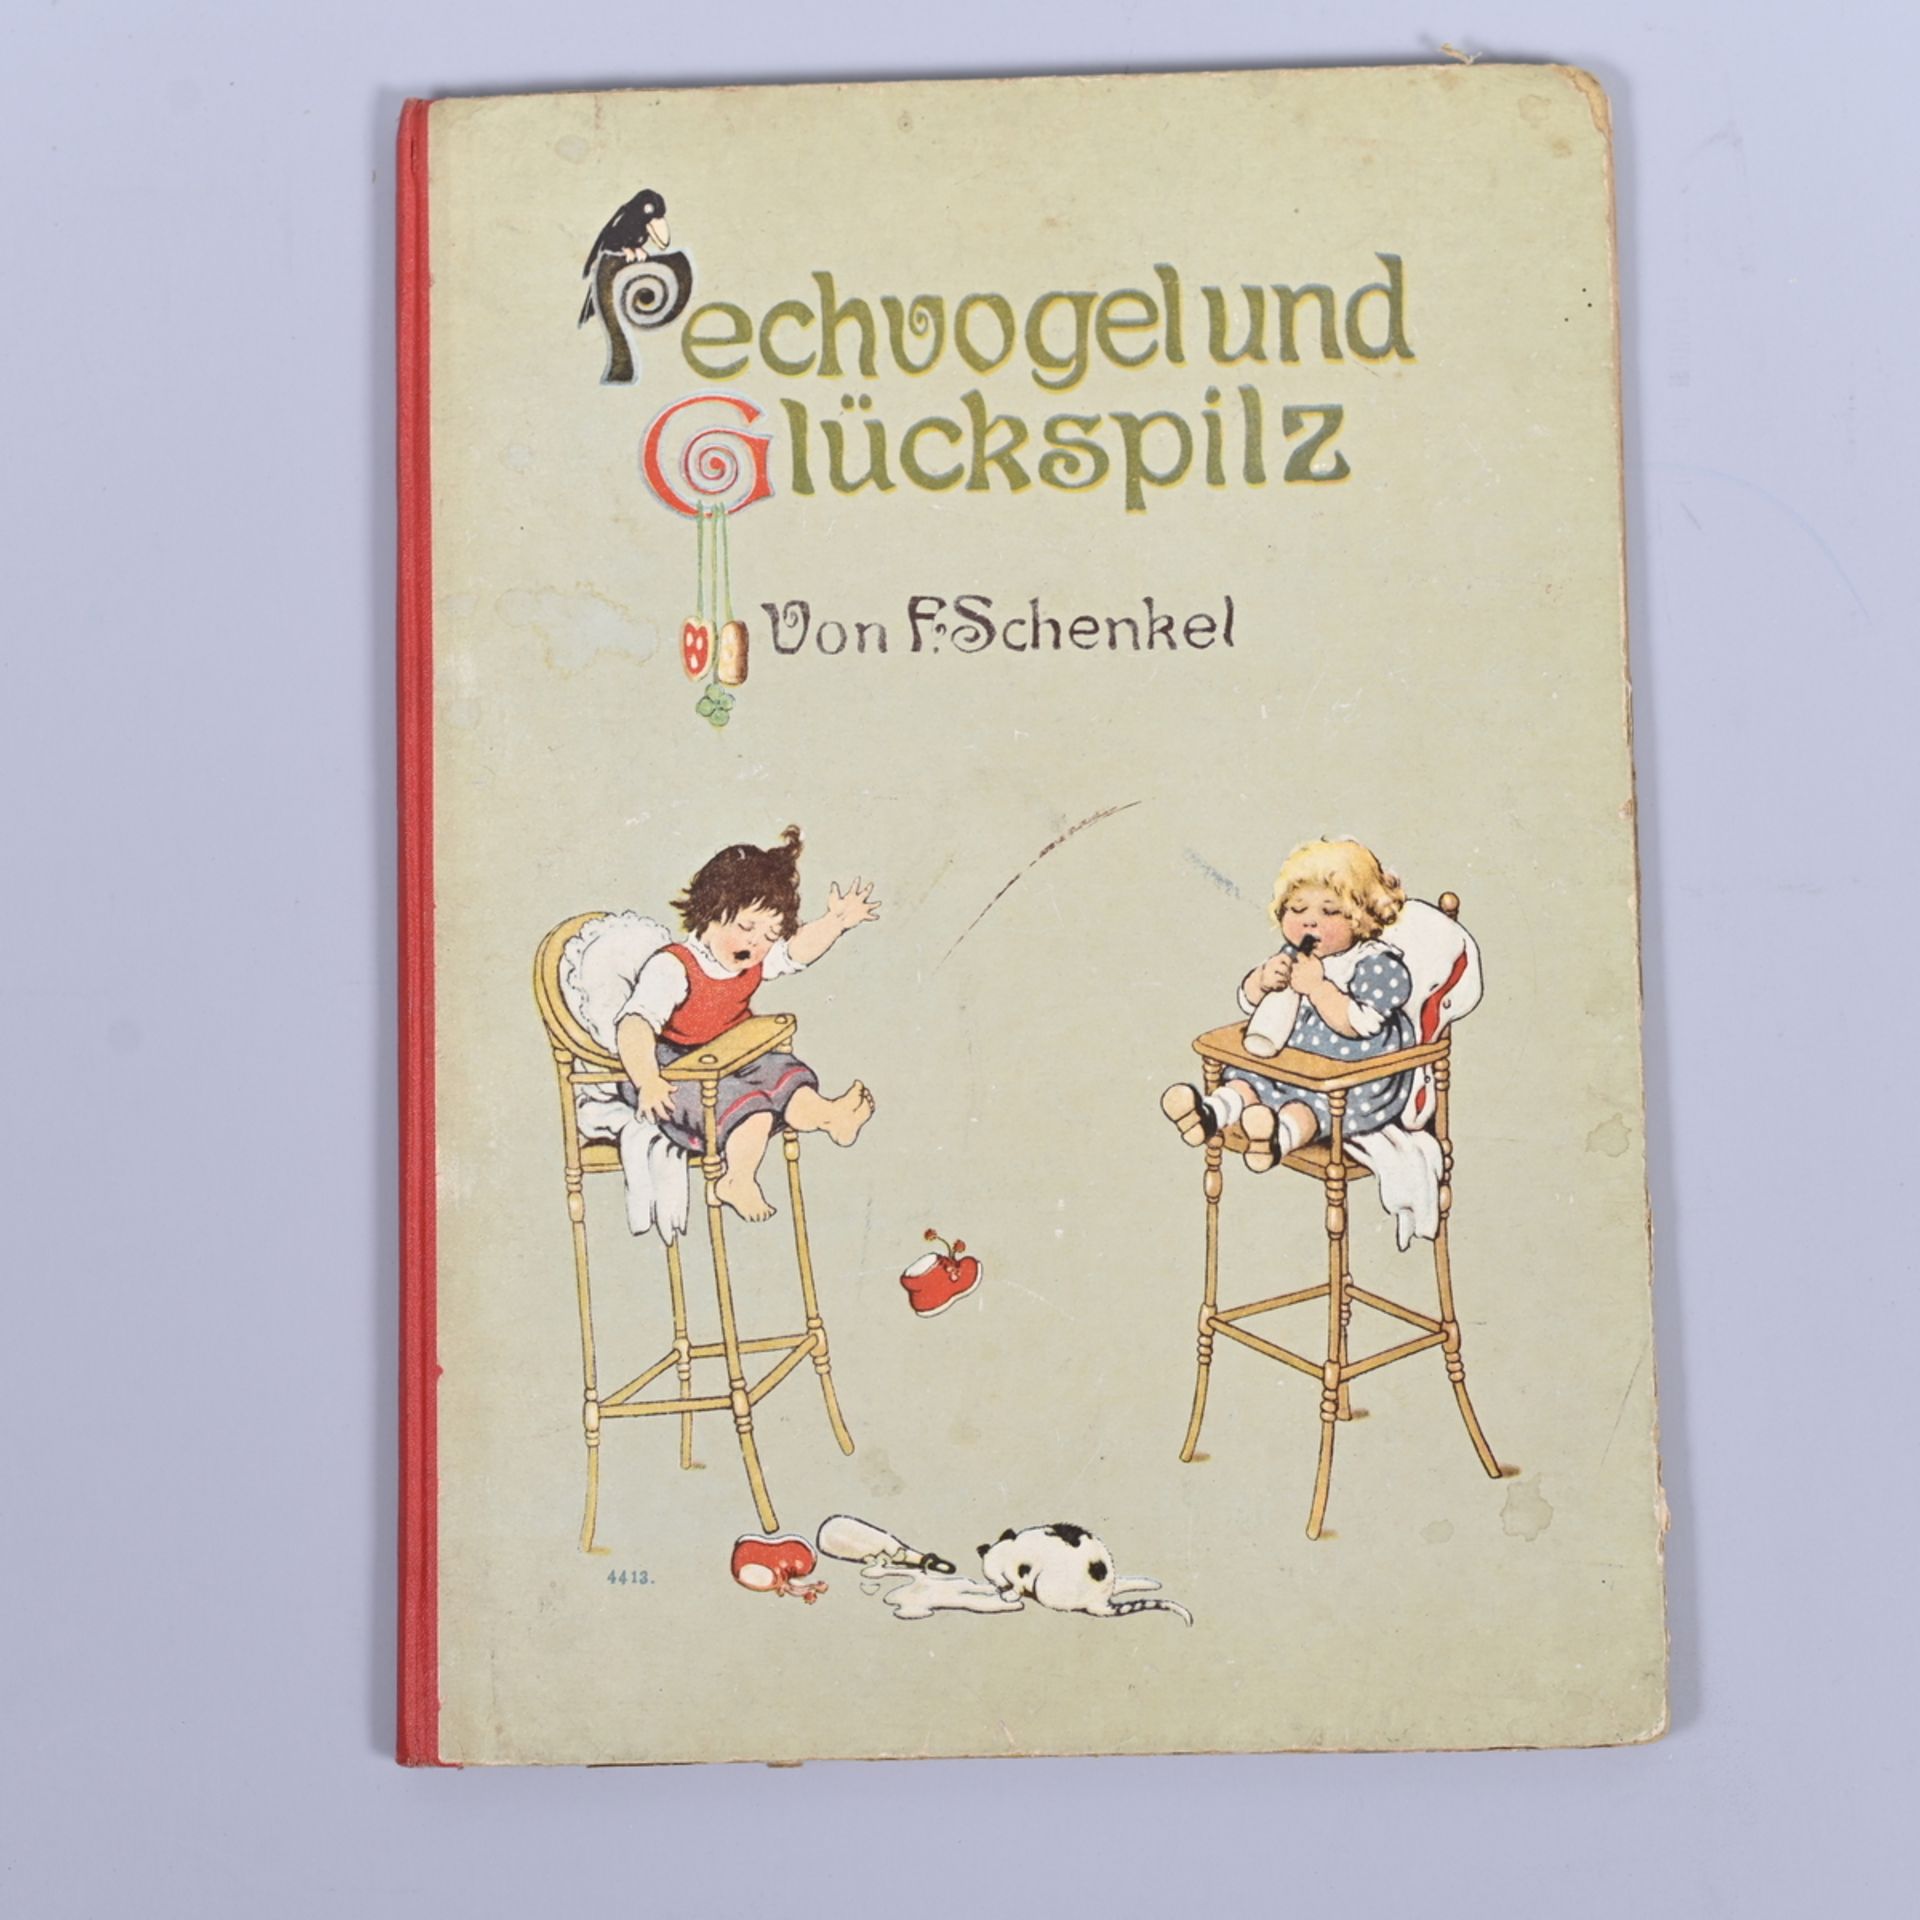 Kinderbuch "Pechvogel und Glückspilz" v. F. Schenkel, altdeutsche Druckschrift, bunt bebildert, um